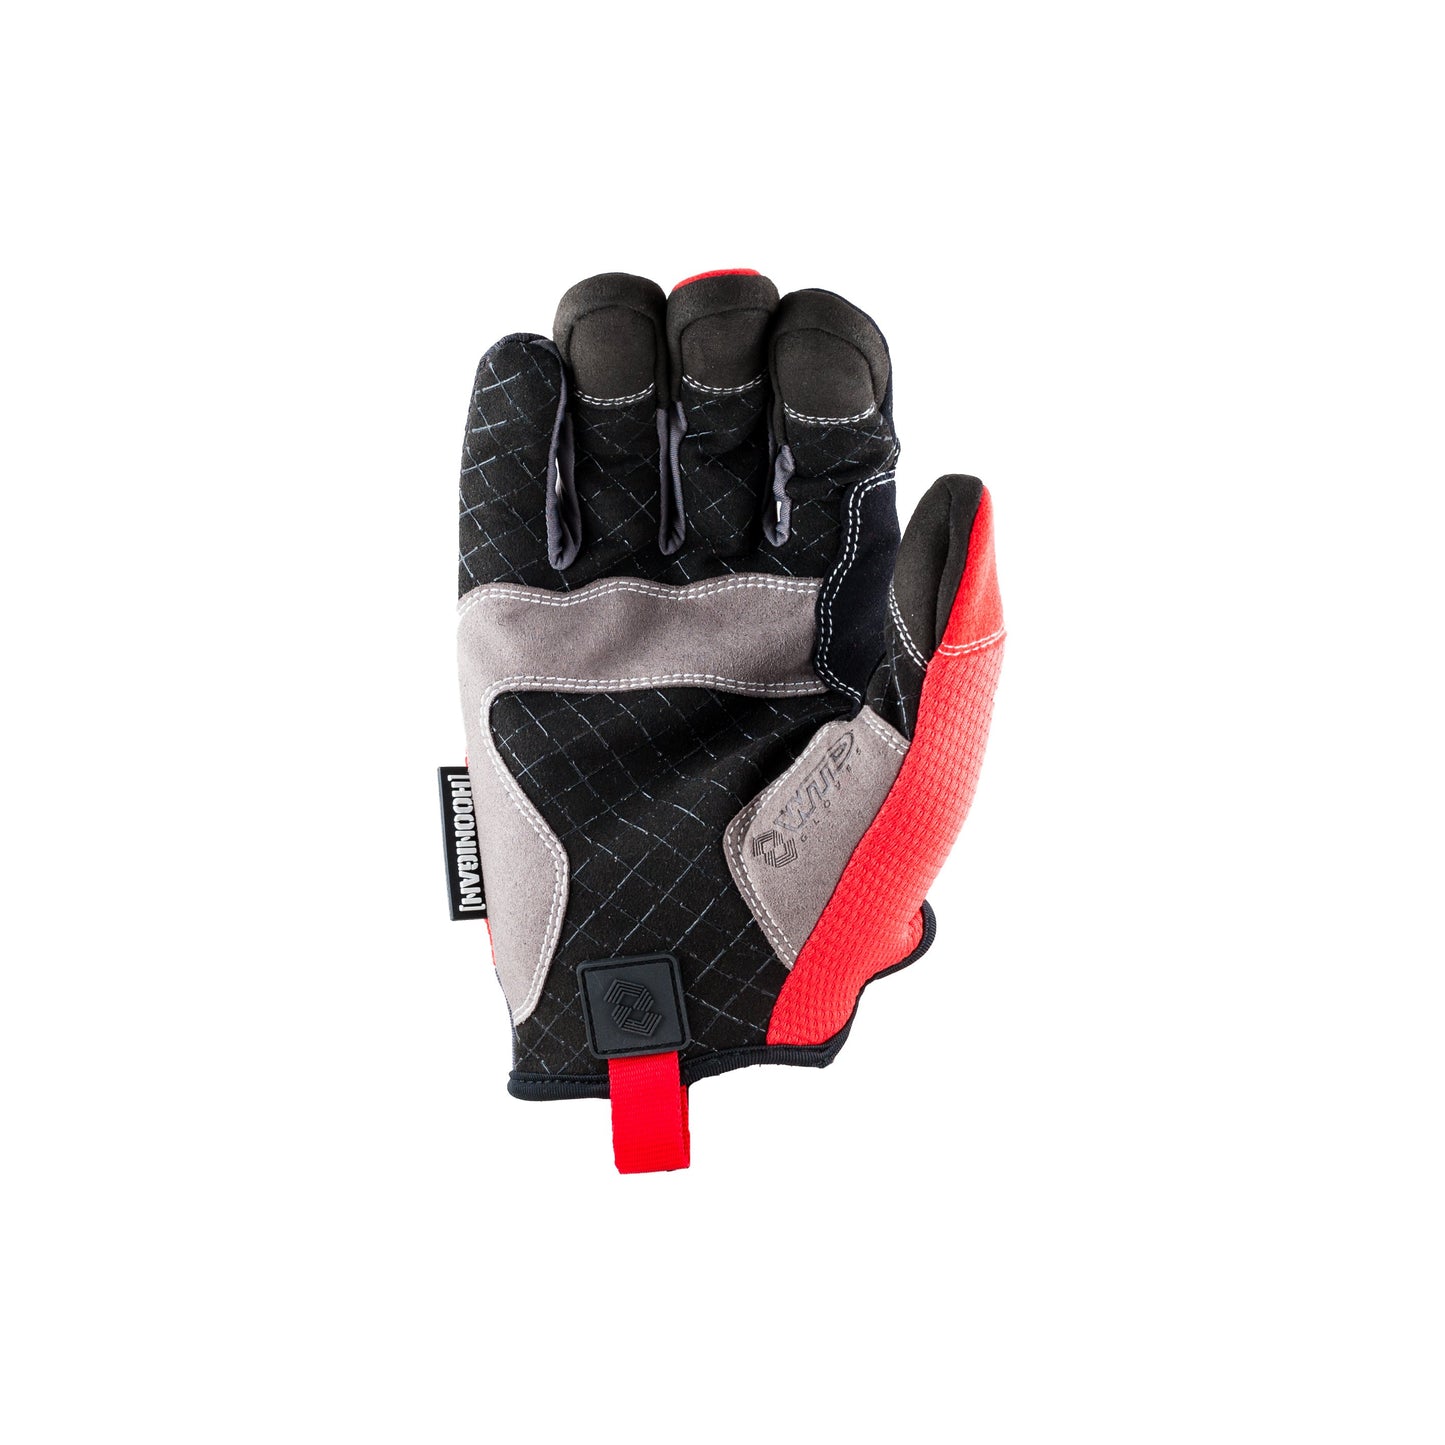 WTD Kuckle Busters Smartglove with touchscreen technology - flip the bird mechanics glove